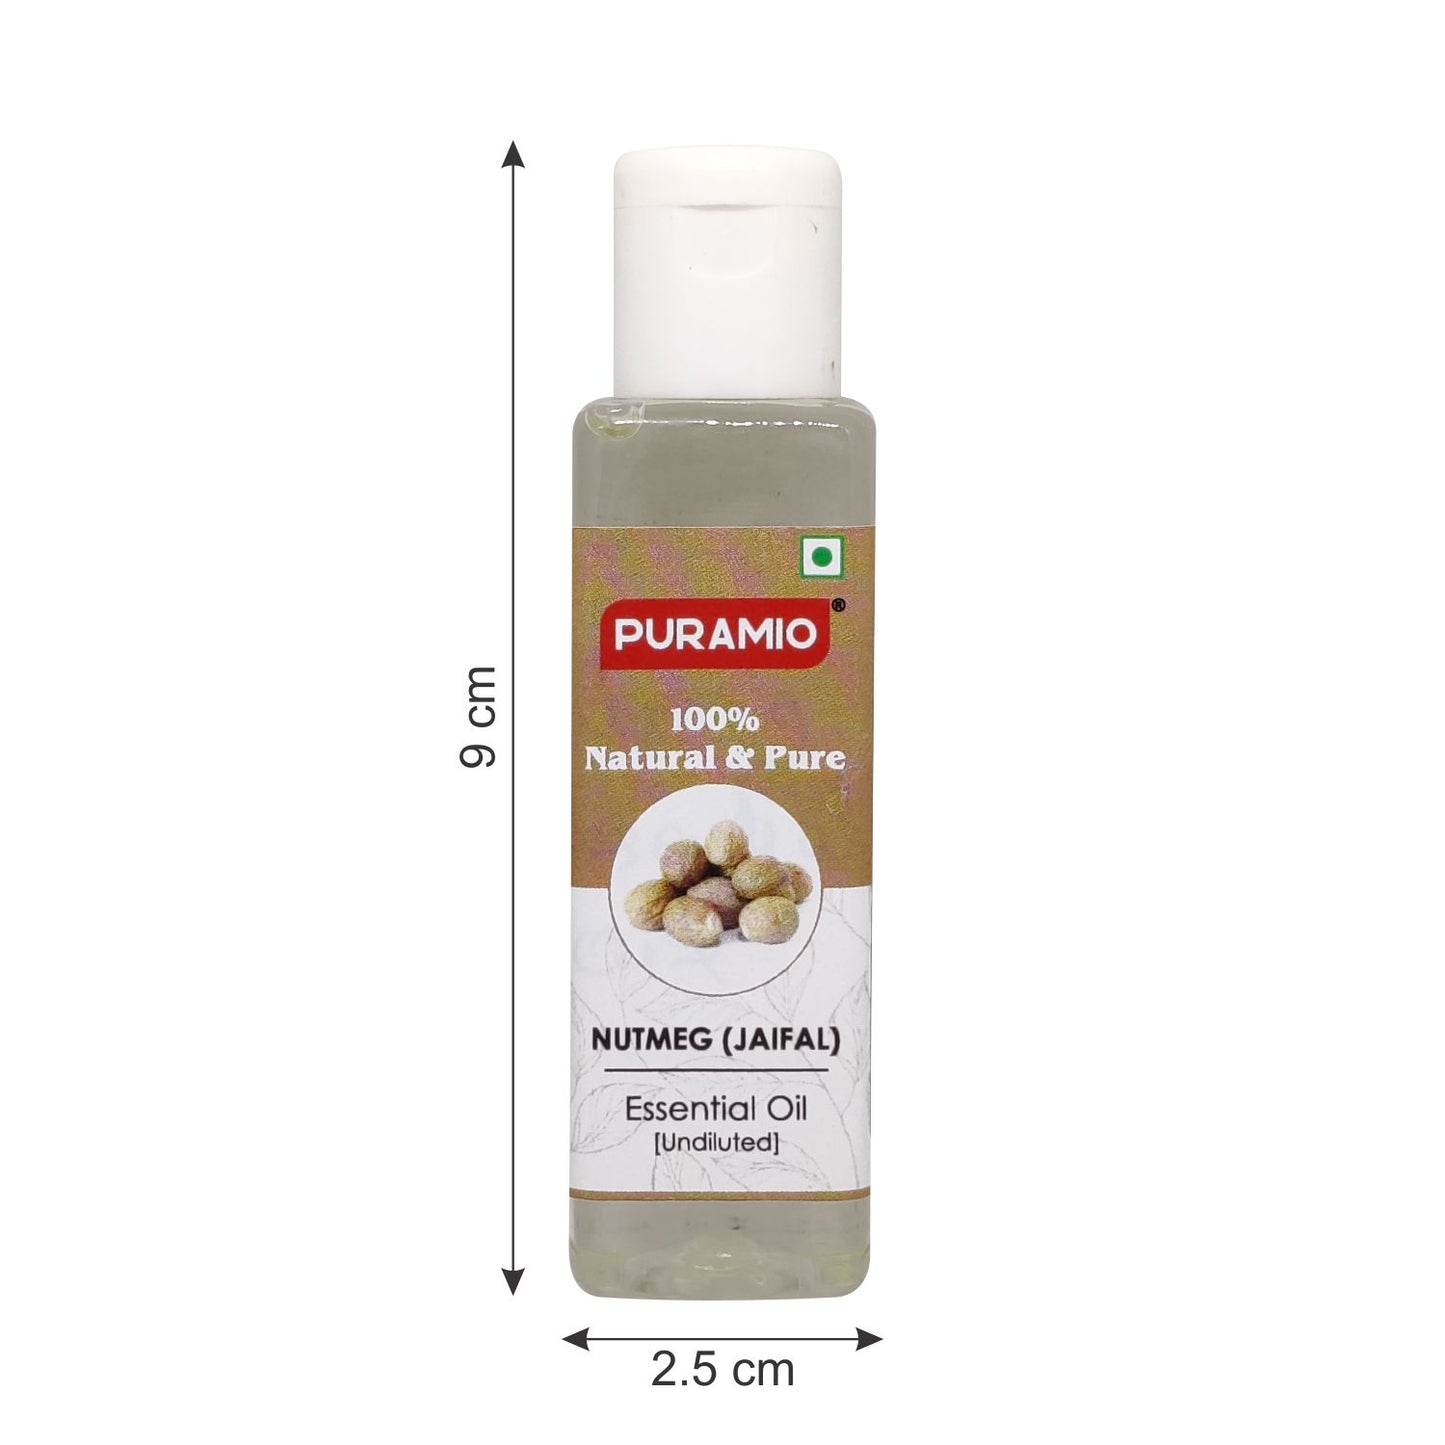 Puramio Nutmeg (Jaifal) Essential Oil [Undiluted]100% Natural & Pure, 30ml